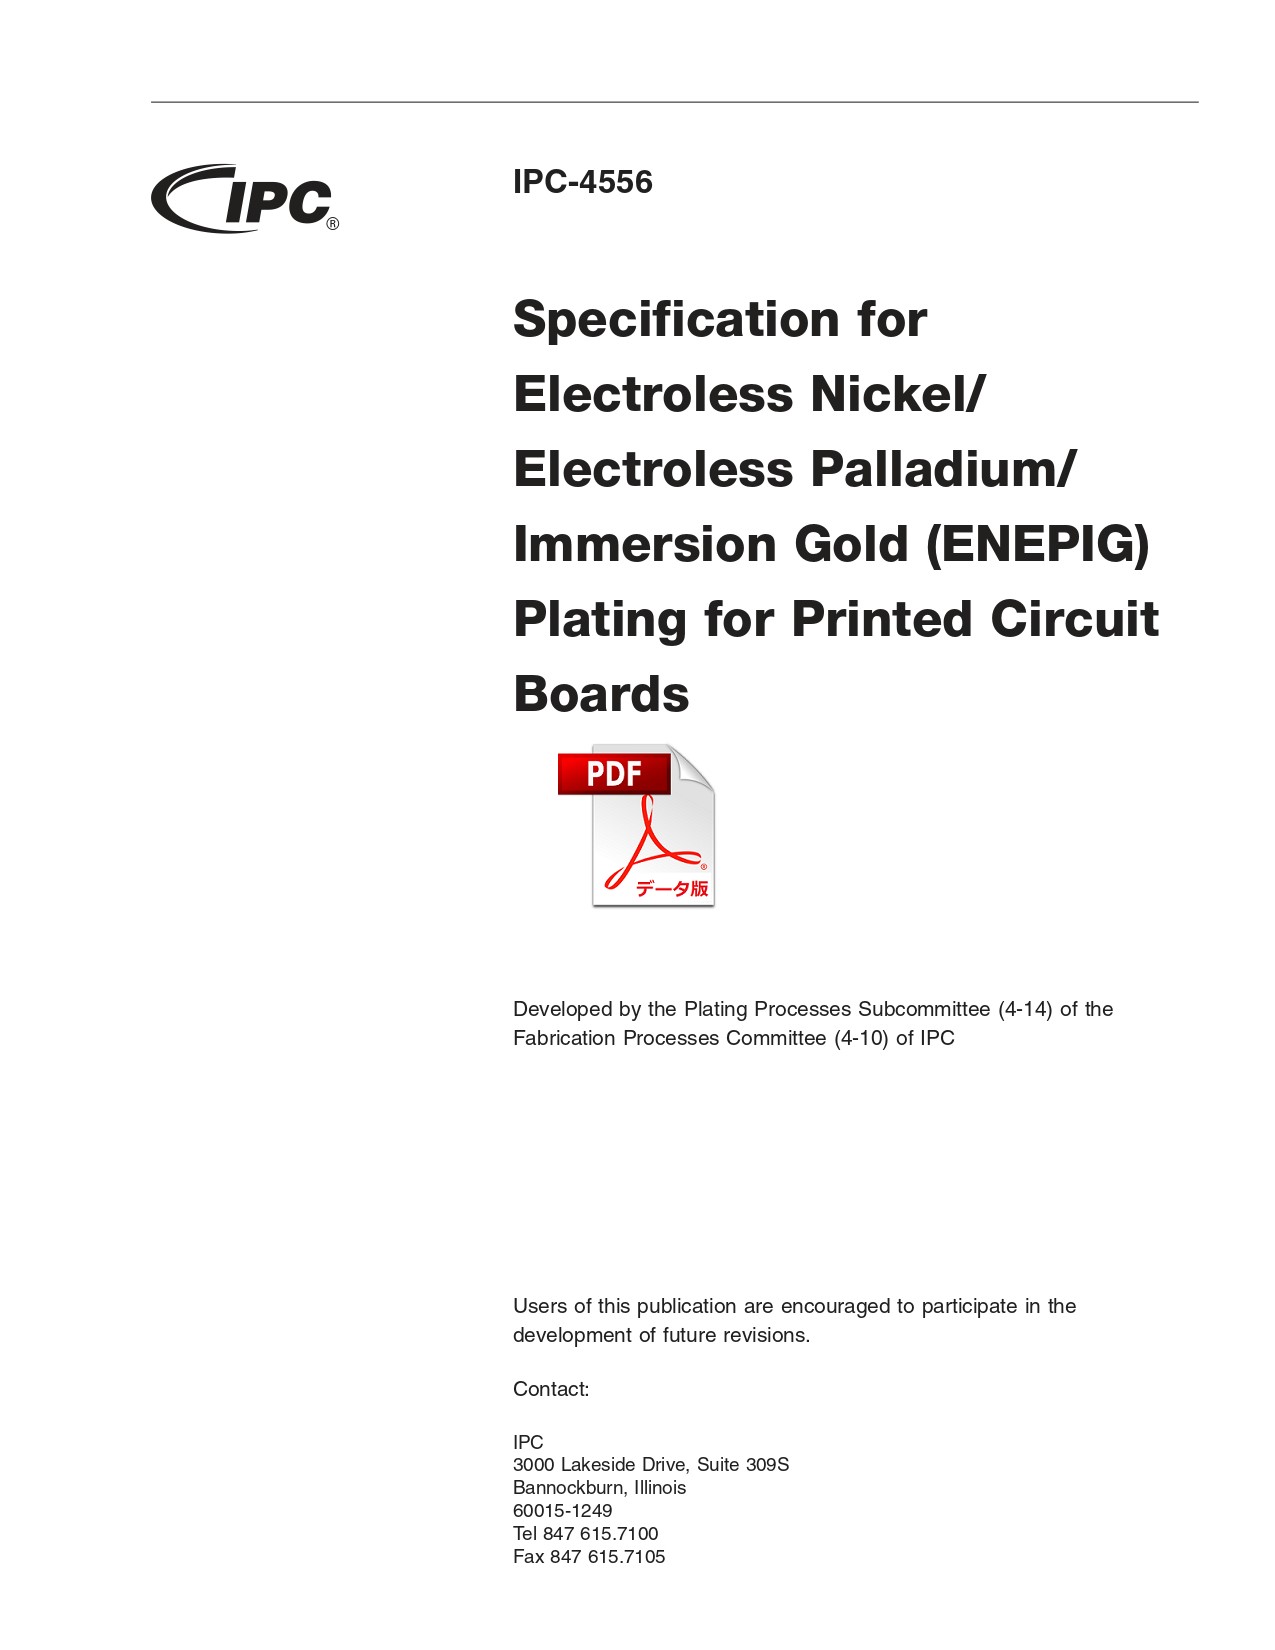 ［英語版］IPC-4556: Specification for Electroless Nickel/Electroless Palladium/Immersion Gold (ENEPIG) Plating for Printed Circuit Boards